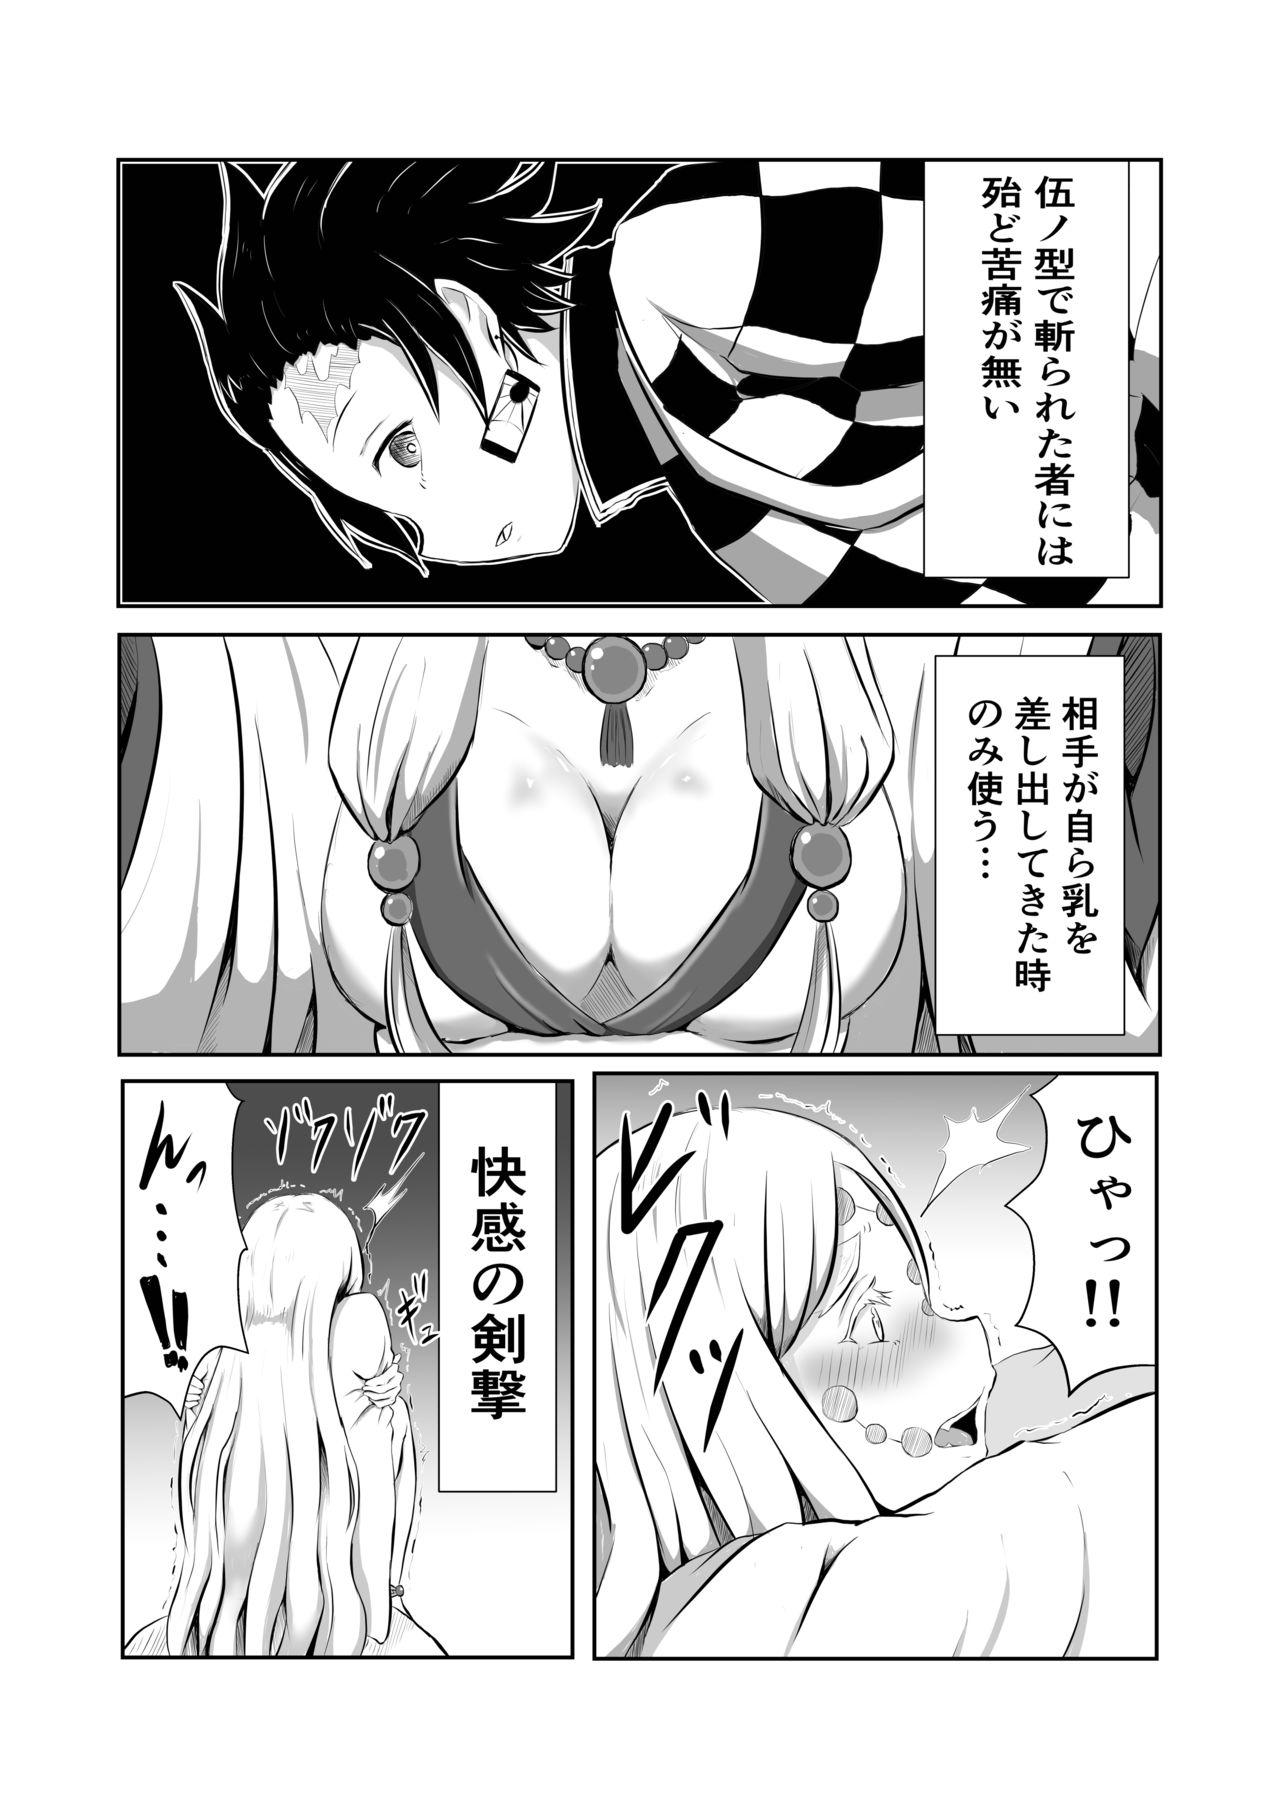 Chick Hinokami Sex. - Kimetsu no yaiba | demon slayer De Quatro - Page 4